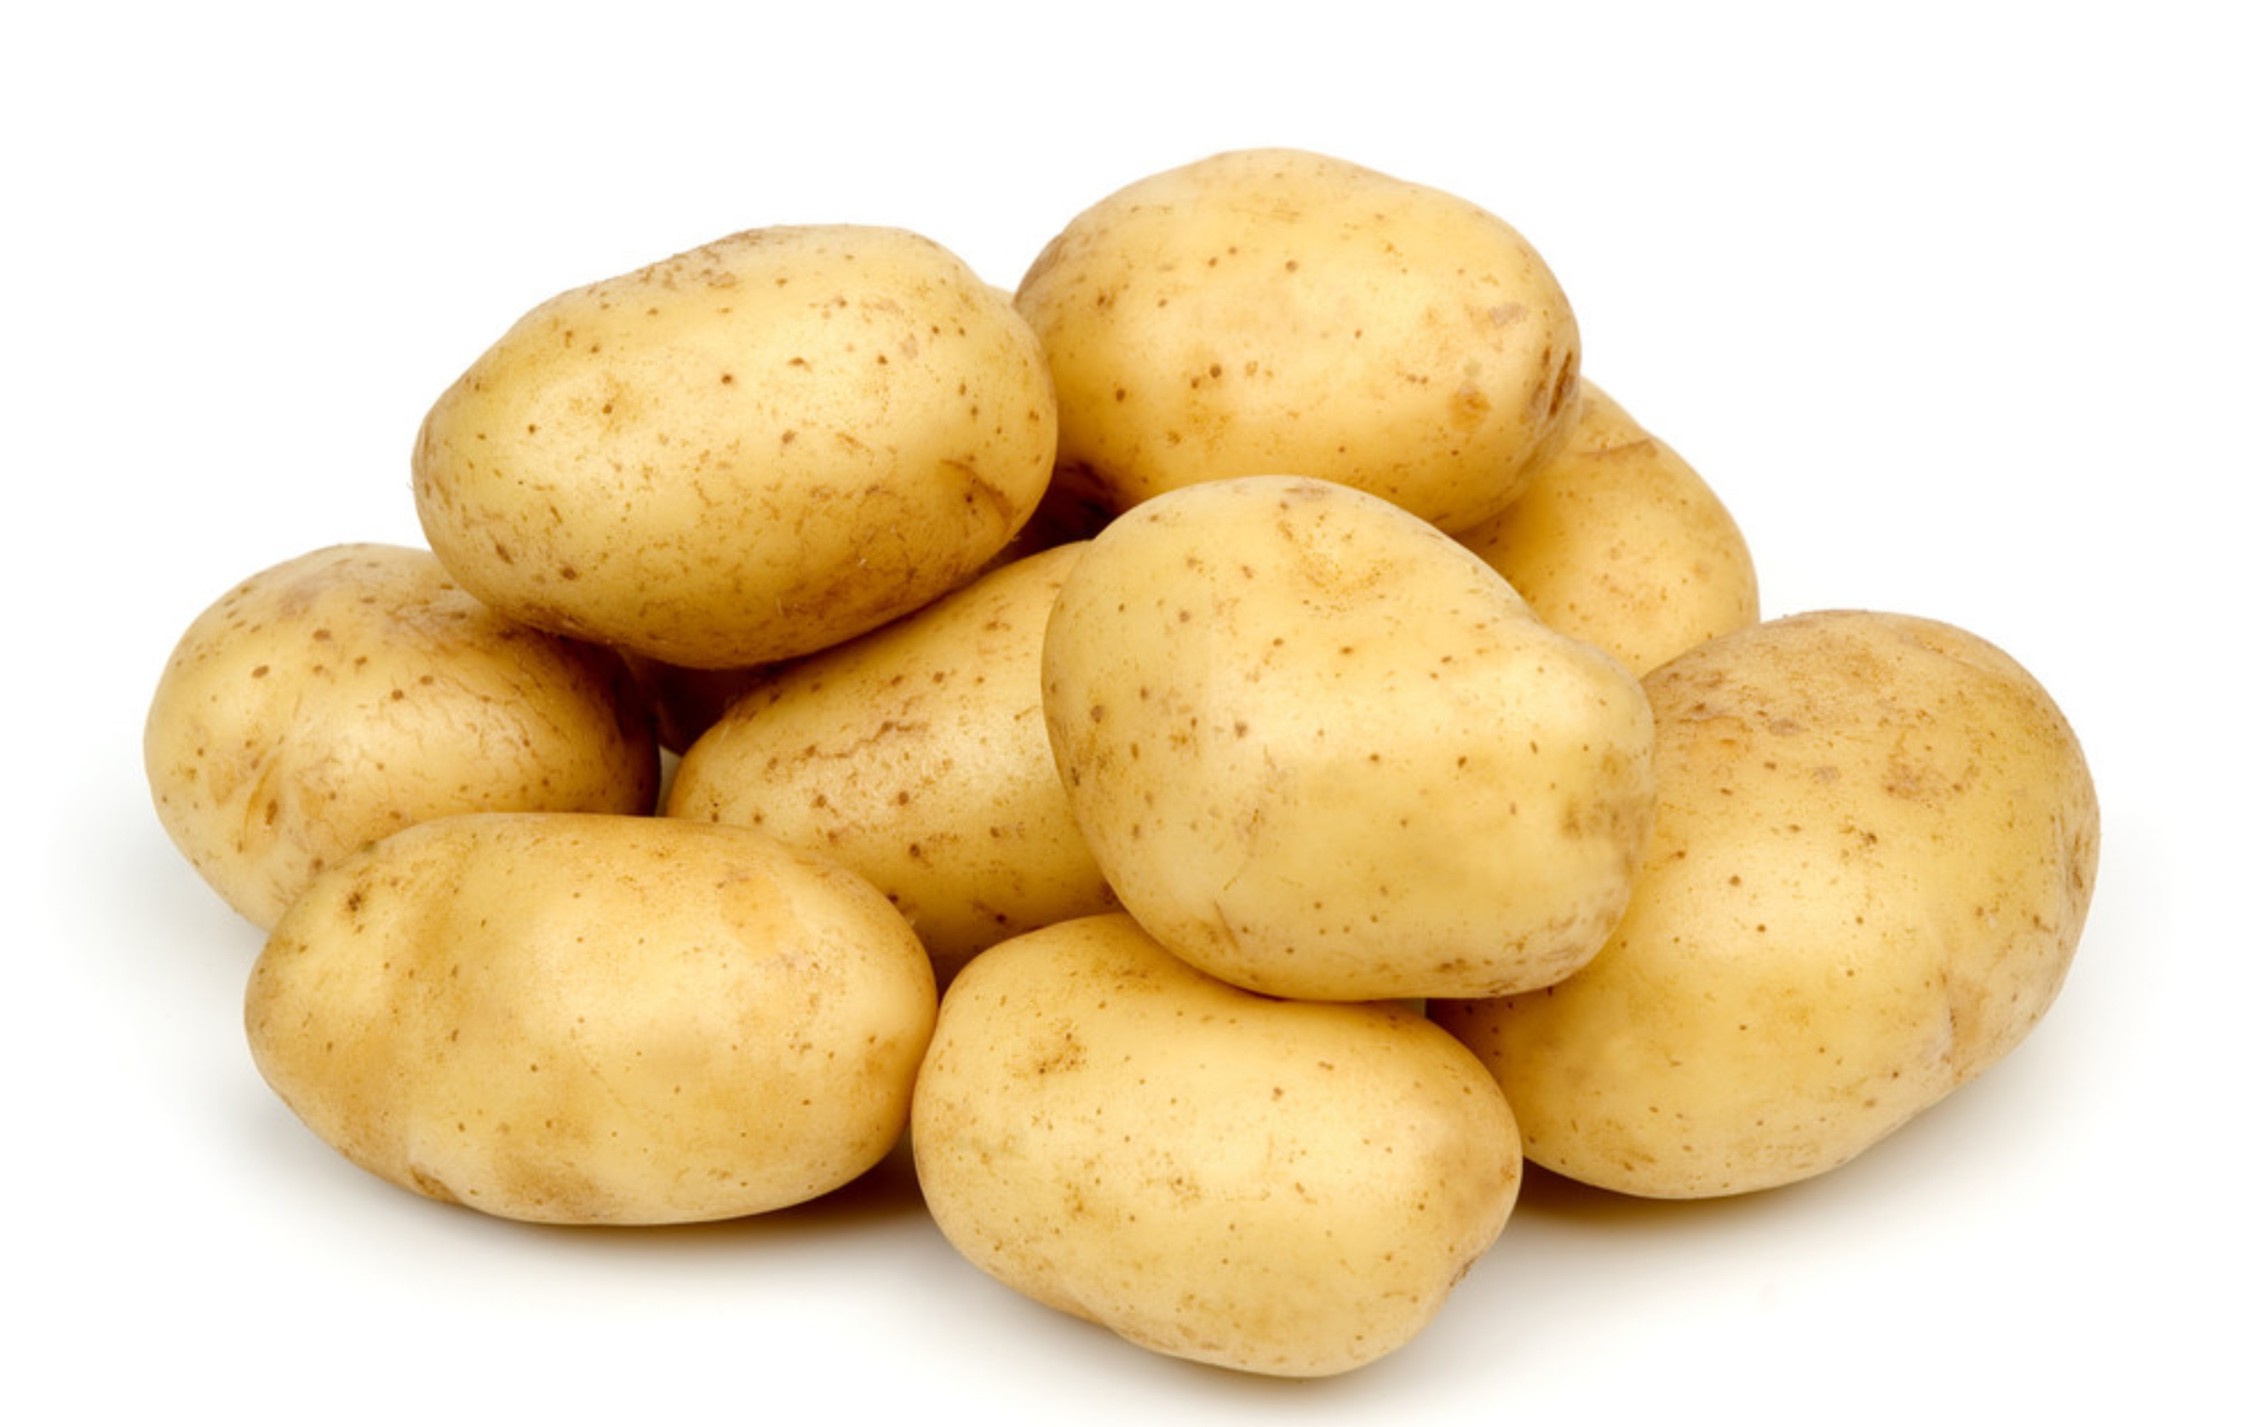 薯类食品多有强健身体的作用,其中富含b族维生素和钾,镁等矿物质